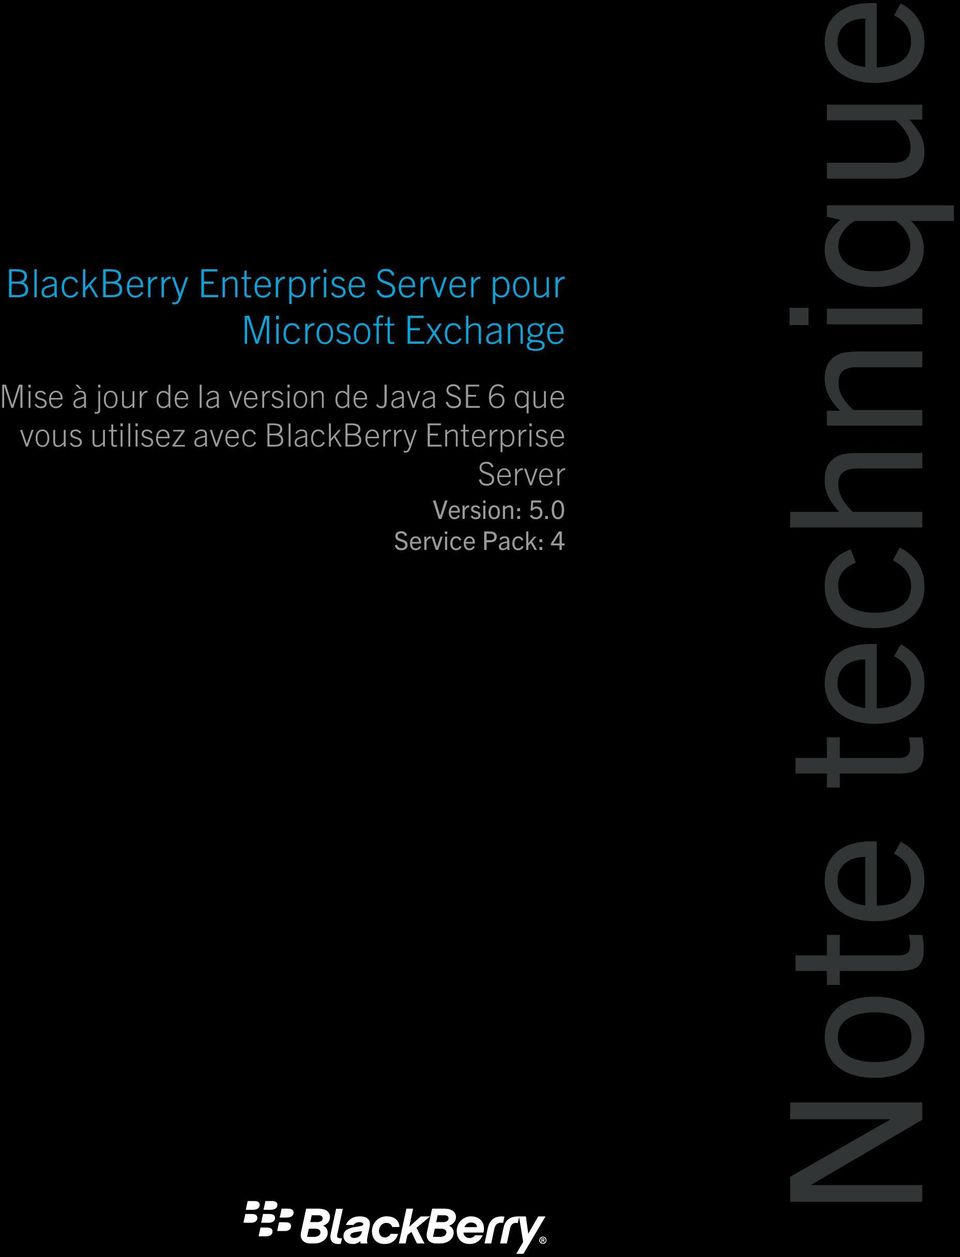 6 que vous utilisez avec BlackBerry Enterprise